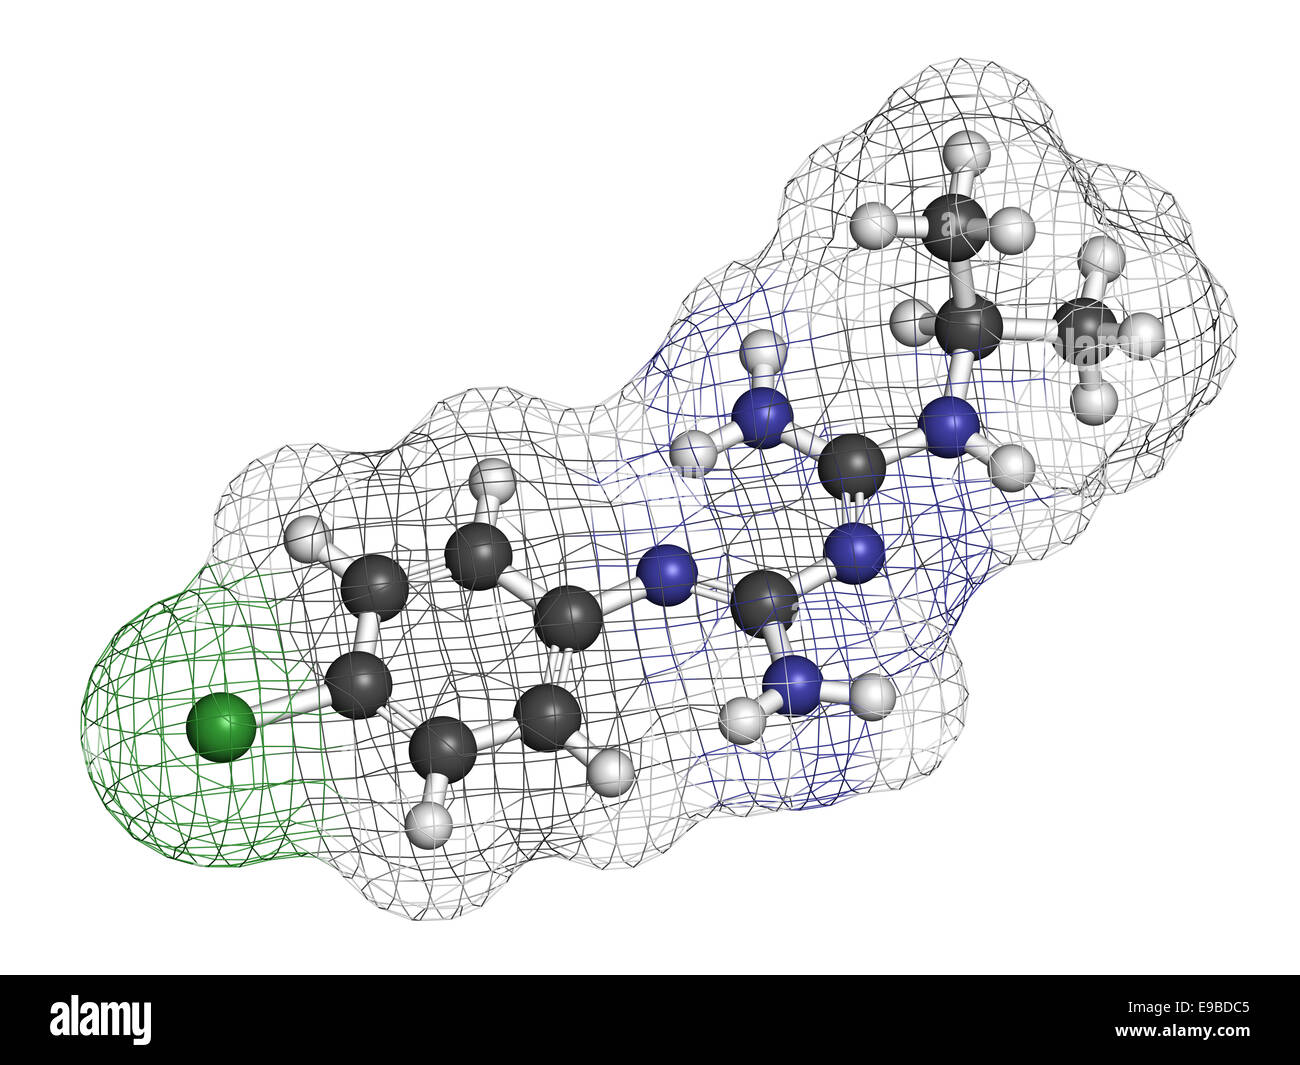 Proguanil prophylaktische Malaria Medikamentenmolekül. Atome sind als Kugeln mit konventionellen Farbcodierung vertreten: Wasserstoff (weiß), Stockfoto